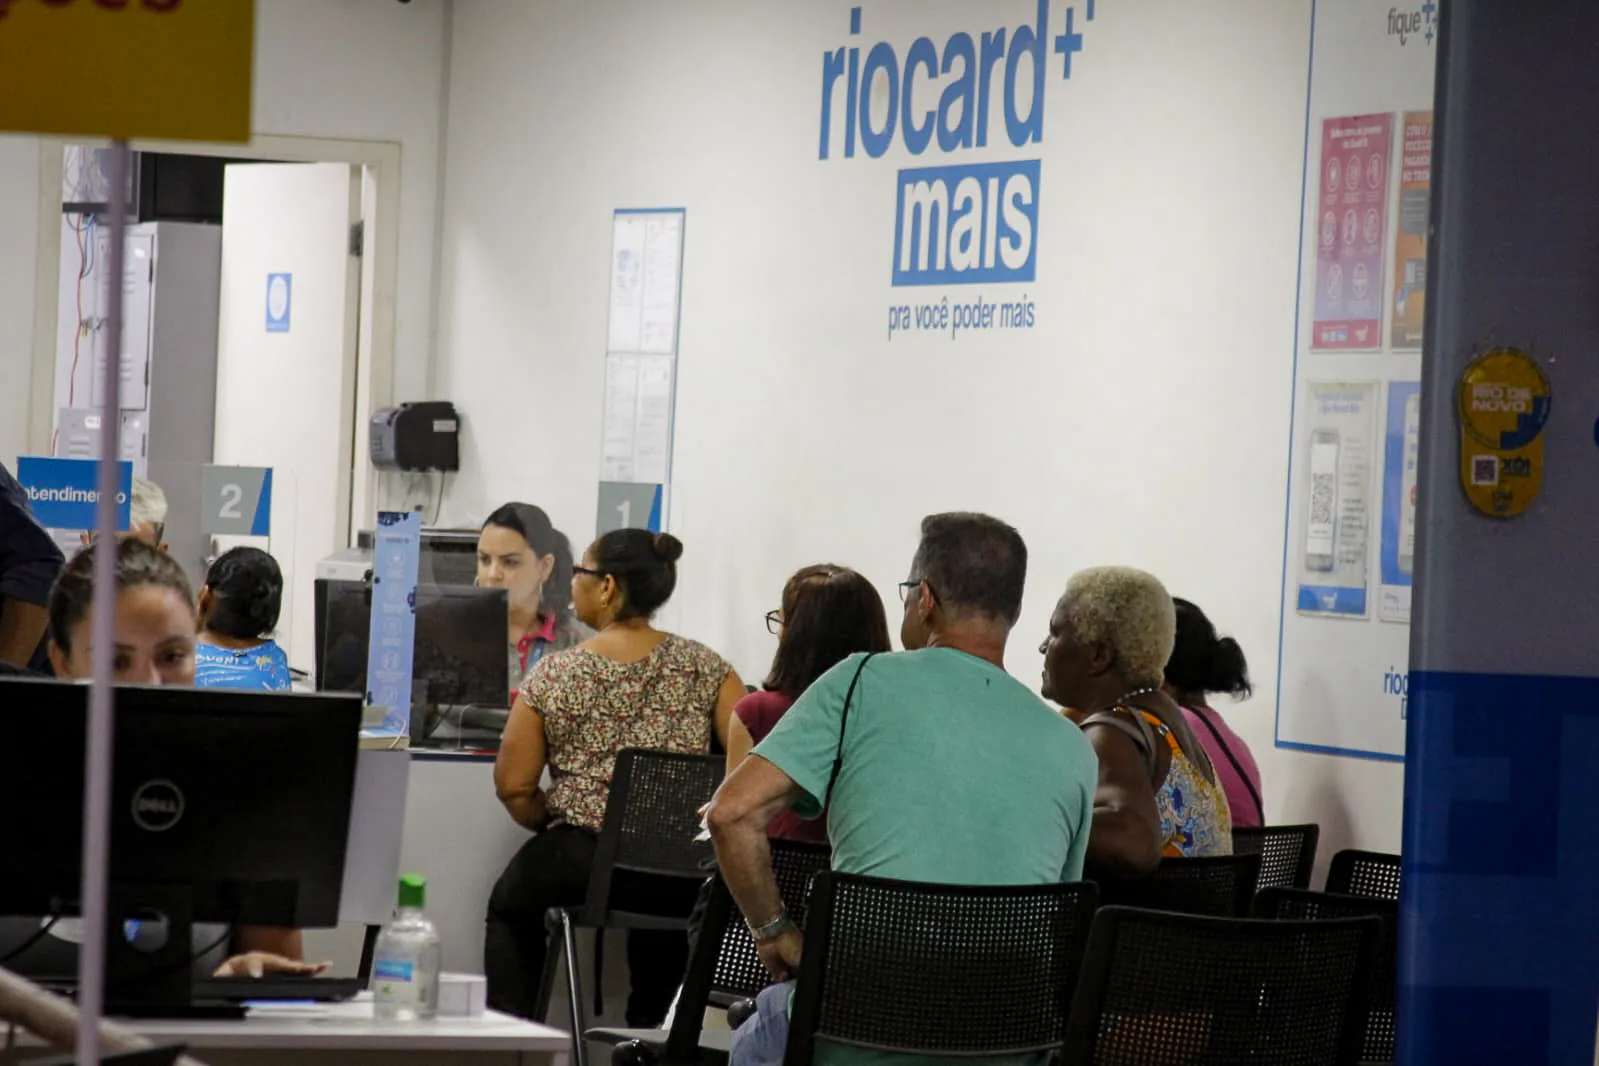 Atendimento acontece em diversos pontos do Rio para cadastro da tarifa social